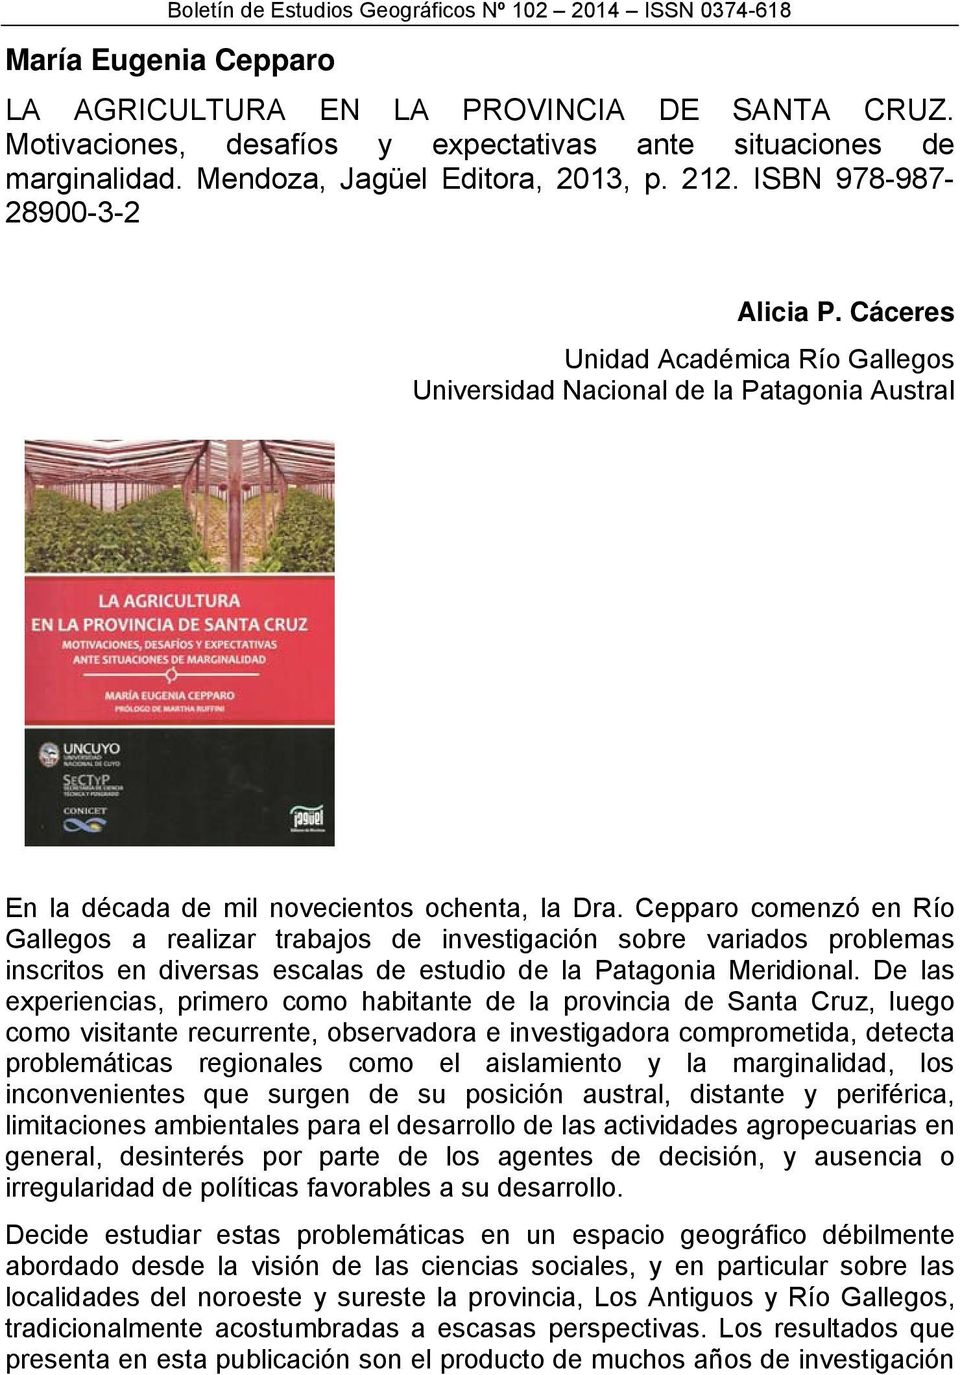 Cepparo comenzó en Río Gallegos a realizar trabajos de investigación sobre variados problemas inscritos en diversas escalas de estudio de la Patagonia Meridional.